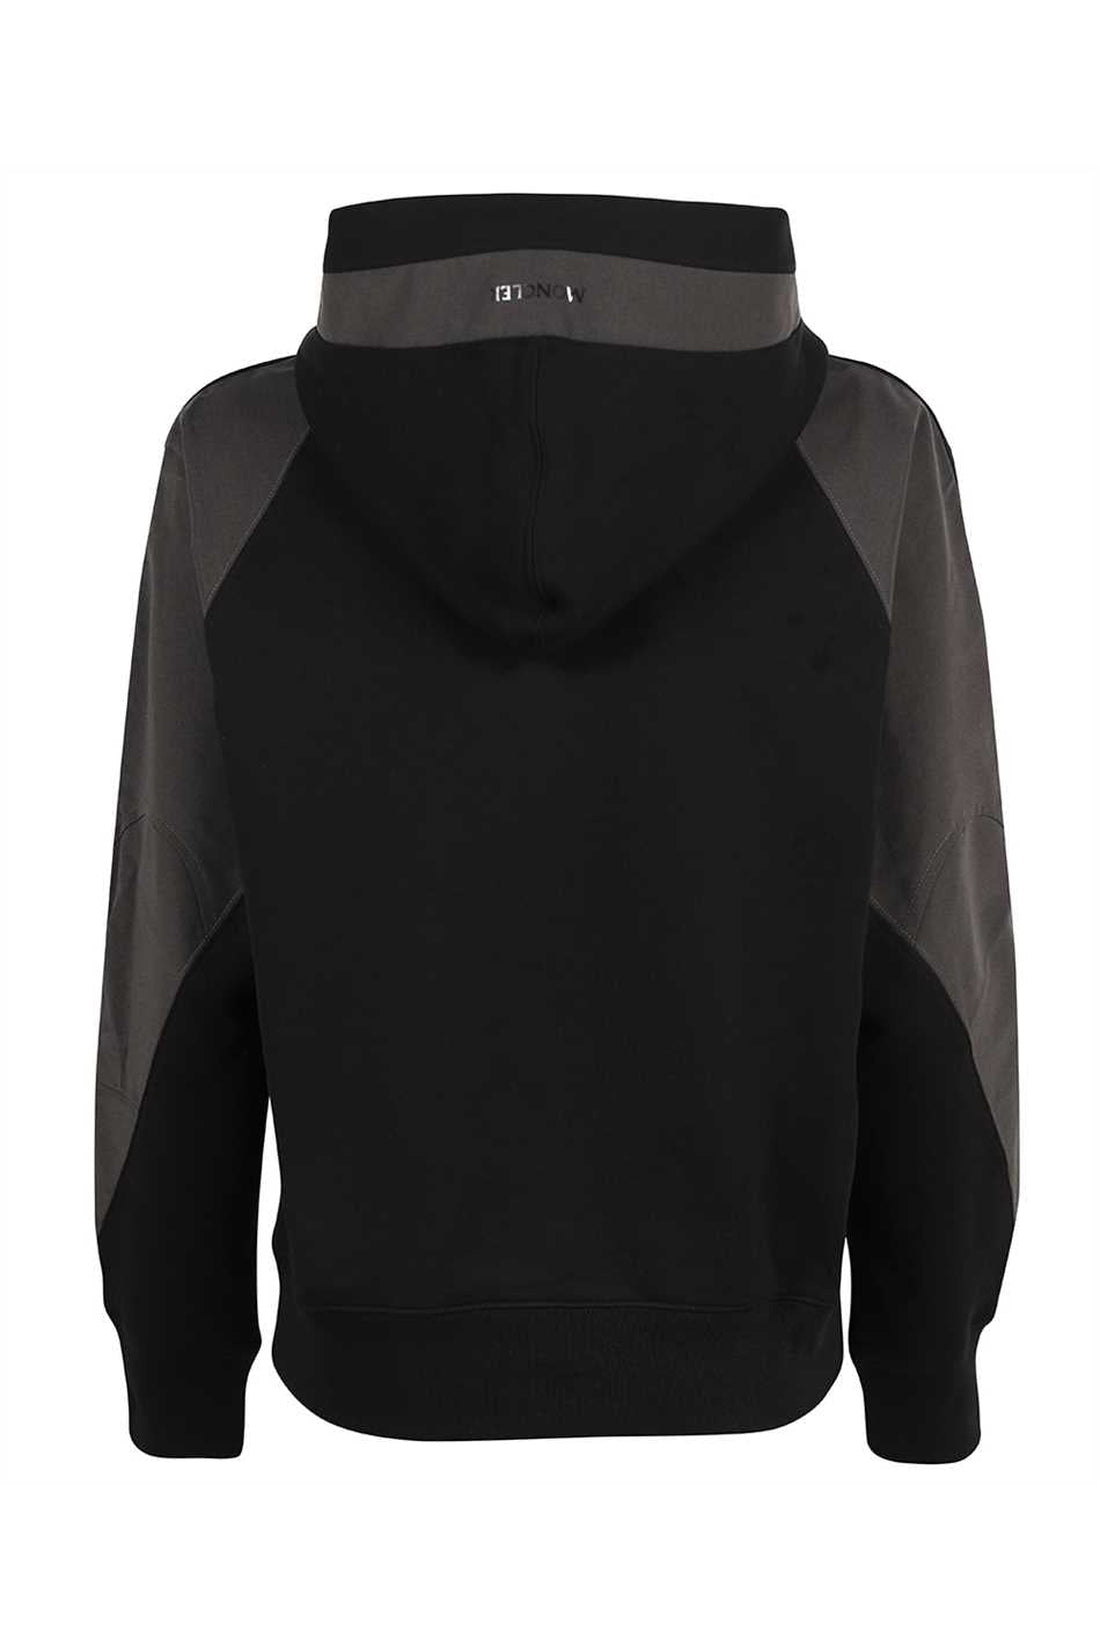 Moncler-OUTLET-SALE-Cotton hoodie-ARCHIVIST